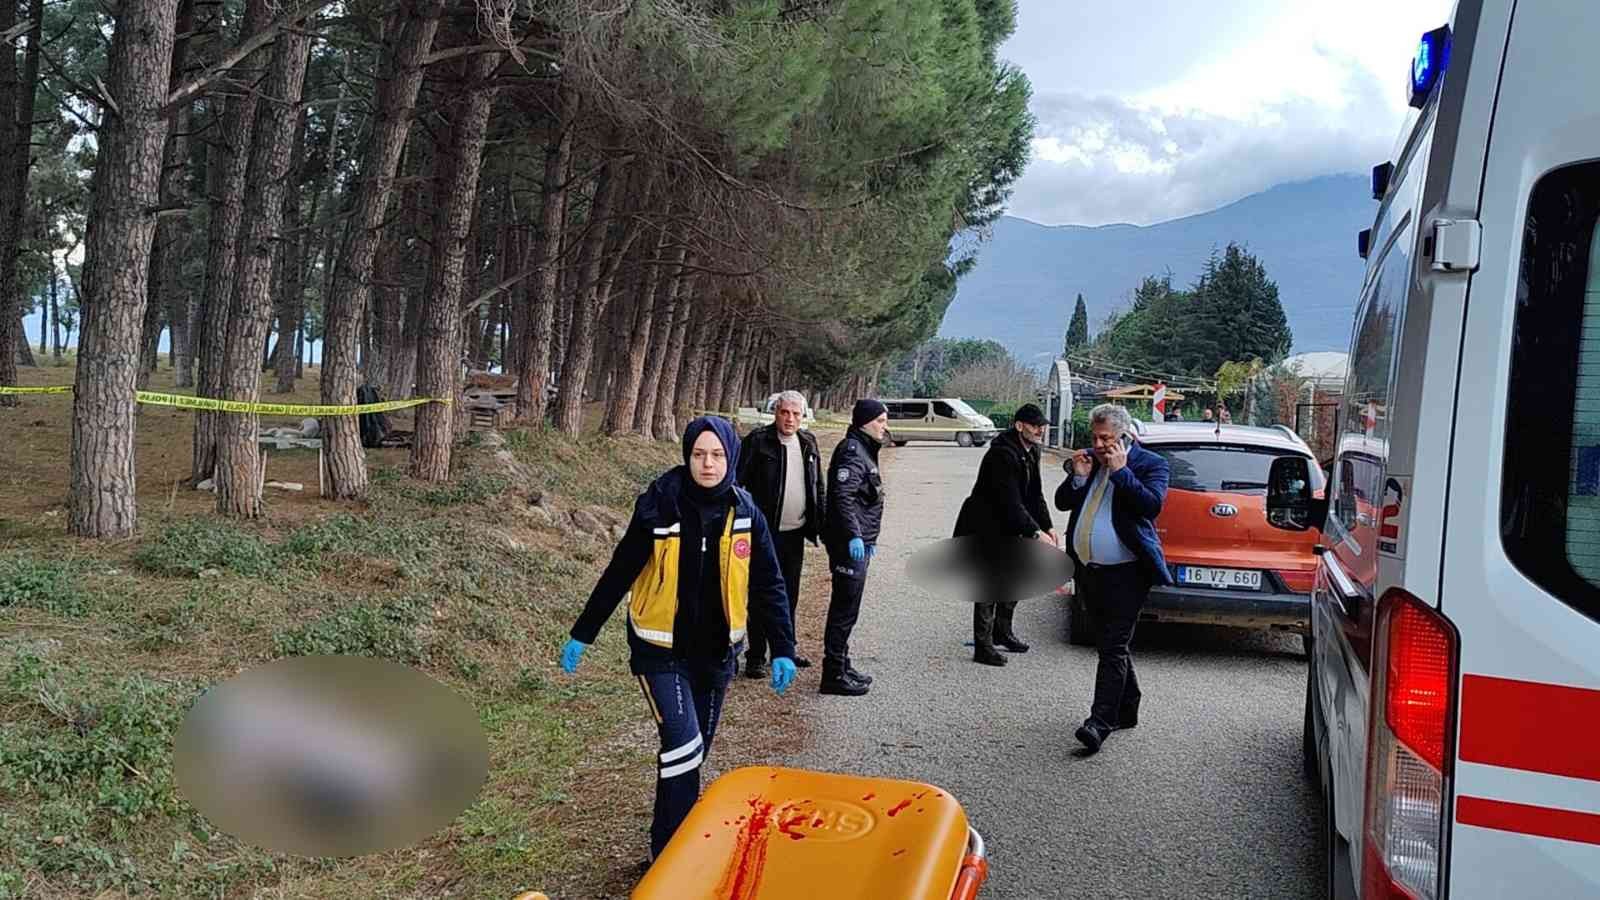 Bursa’da 4 kişinin öldürüldüğü cinayetin güvenlik kamera kayıtları ortaya çıktı